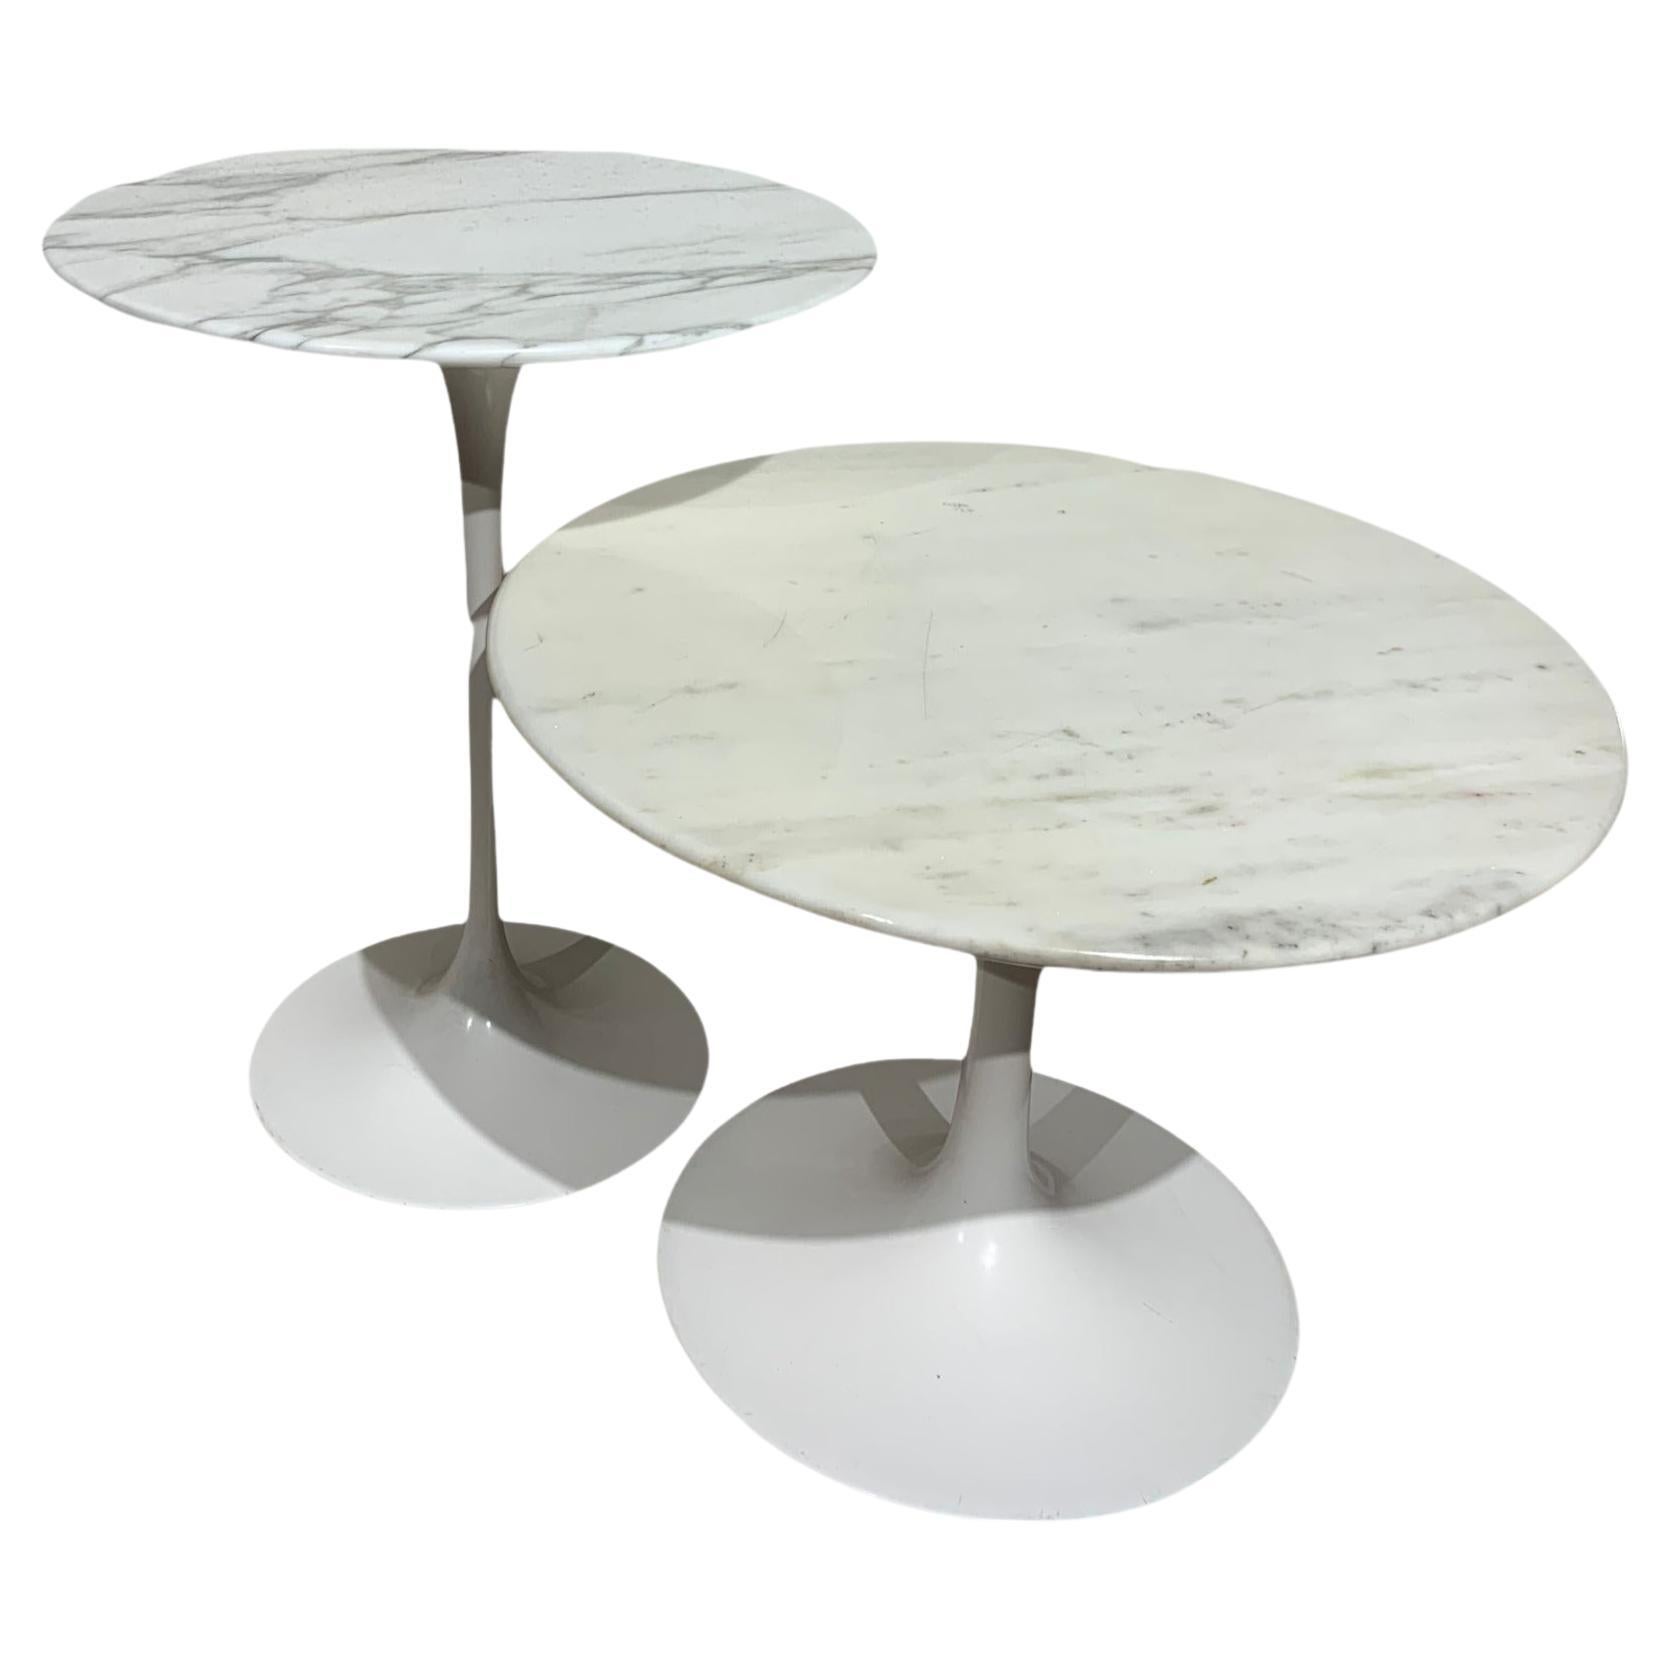 Pair of Tulip Tables by Eero Saarinen for Knoll